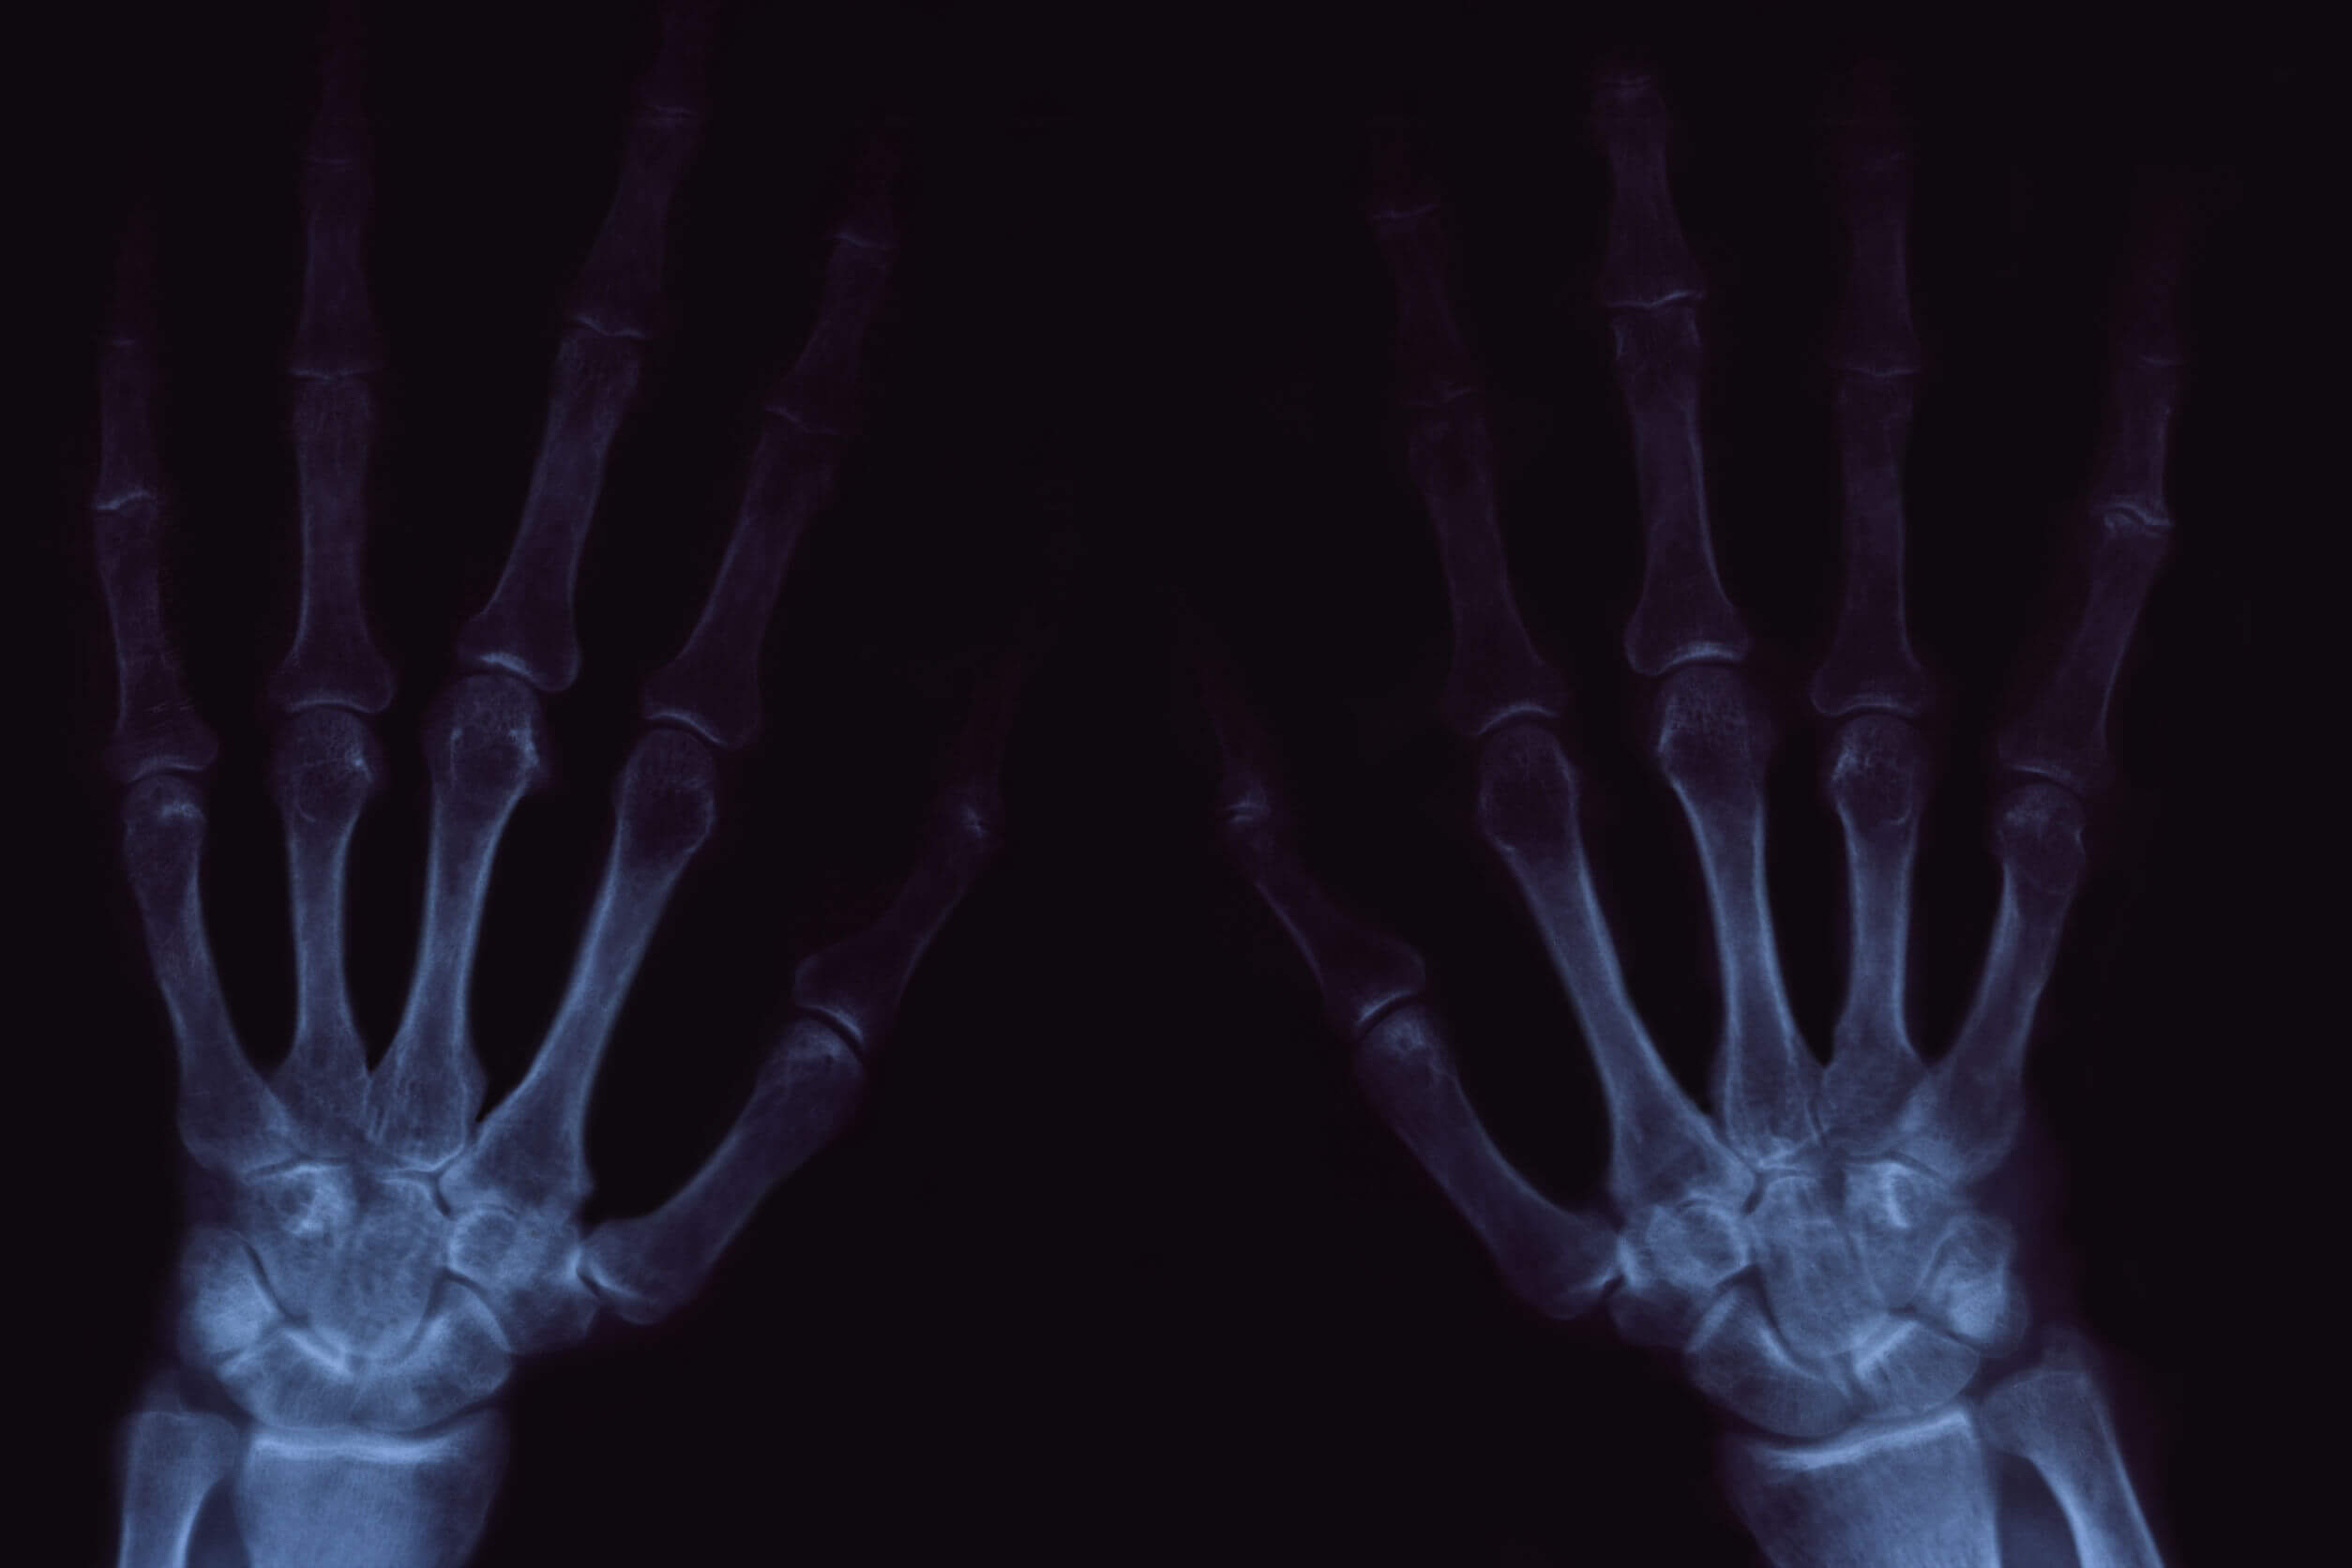 El crujido de las articulaciones puede ser doloroso en los casos de artrosis.